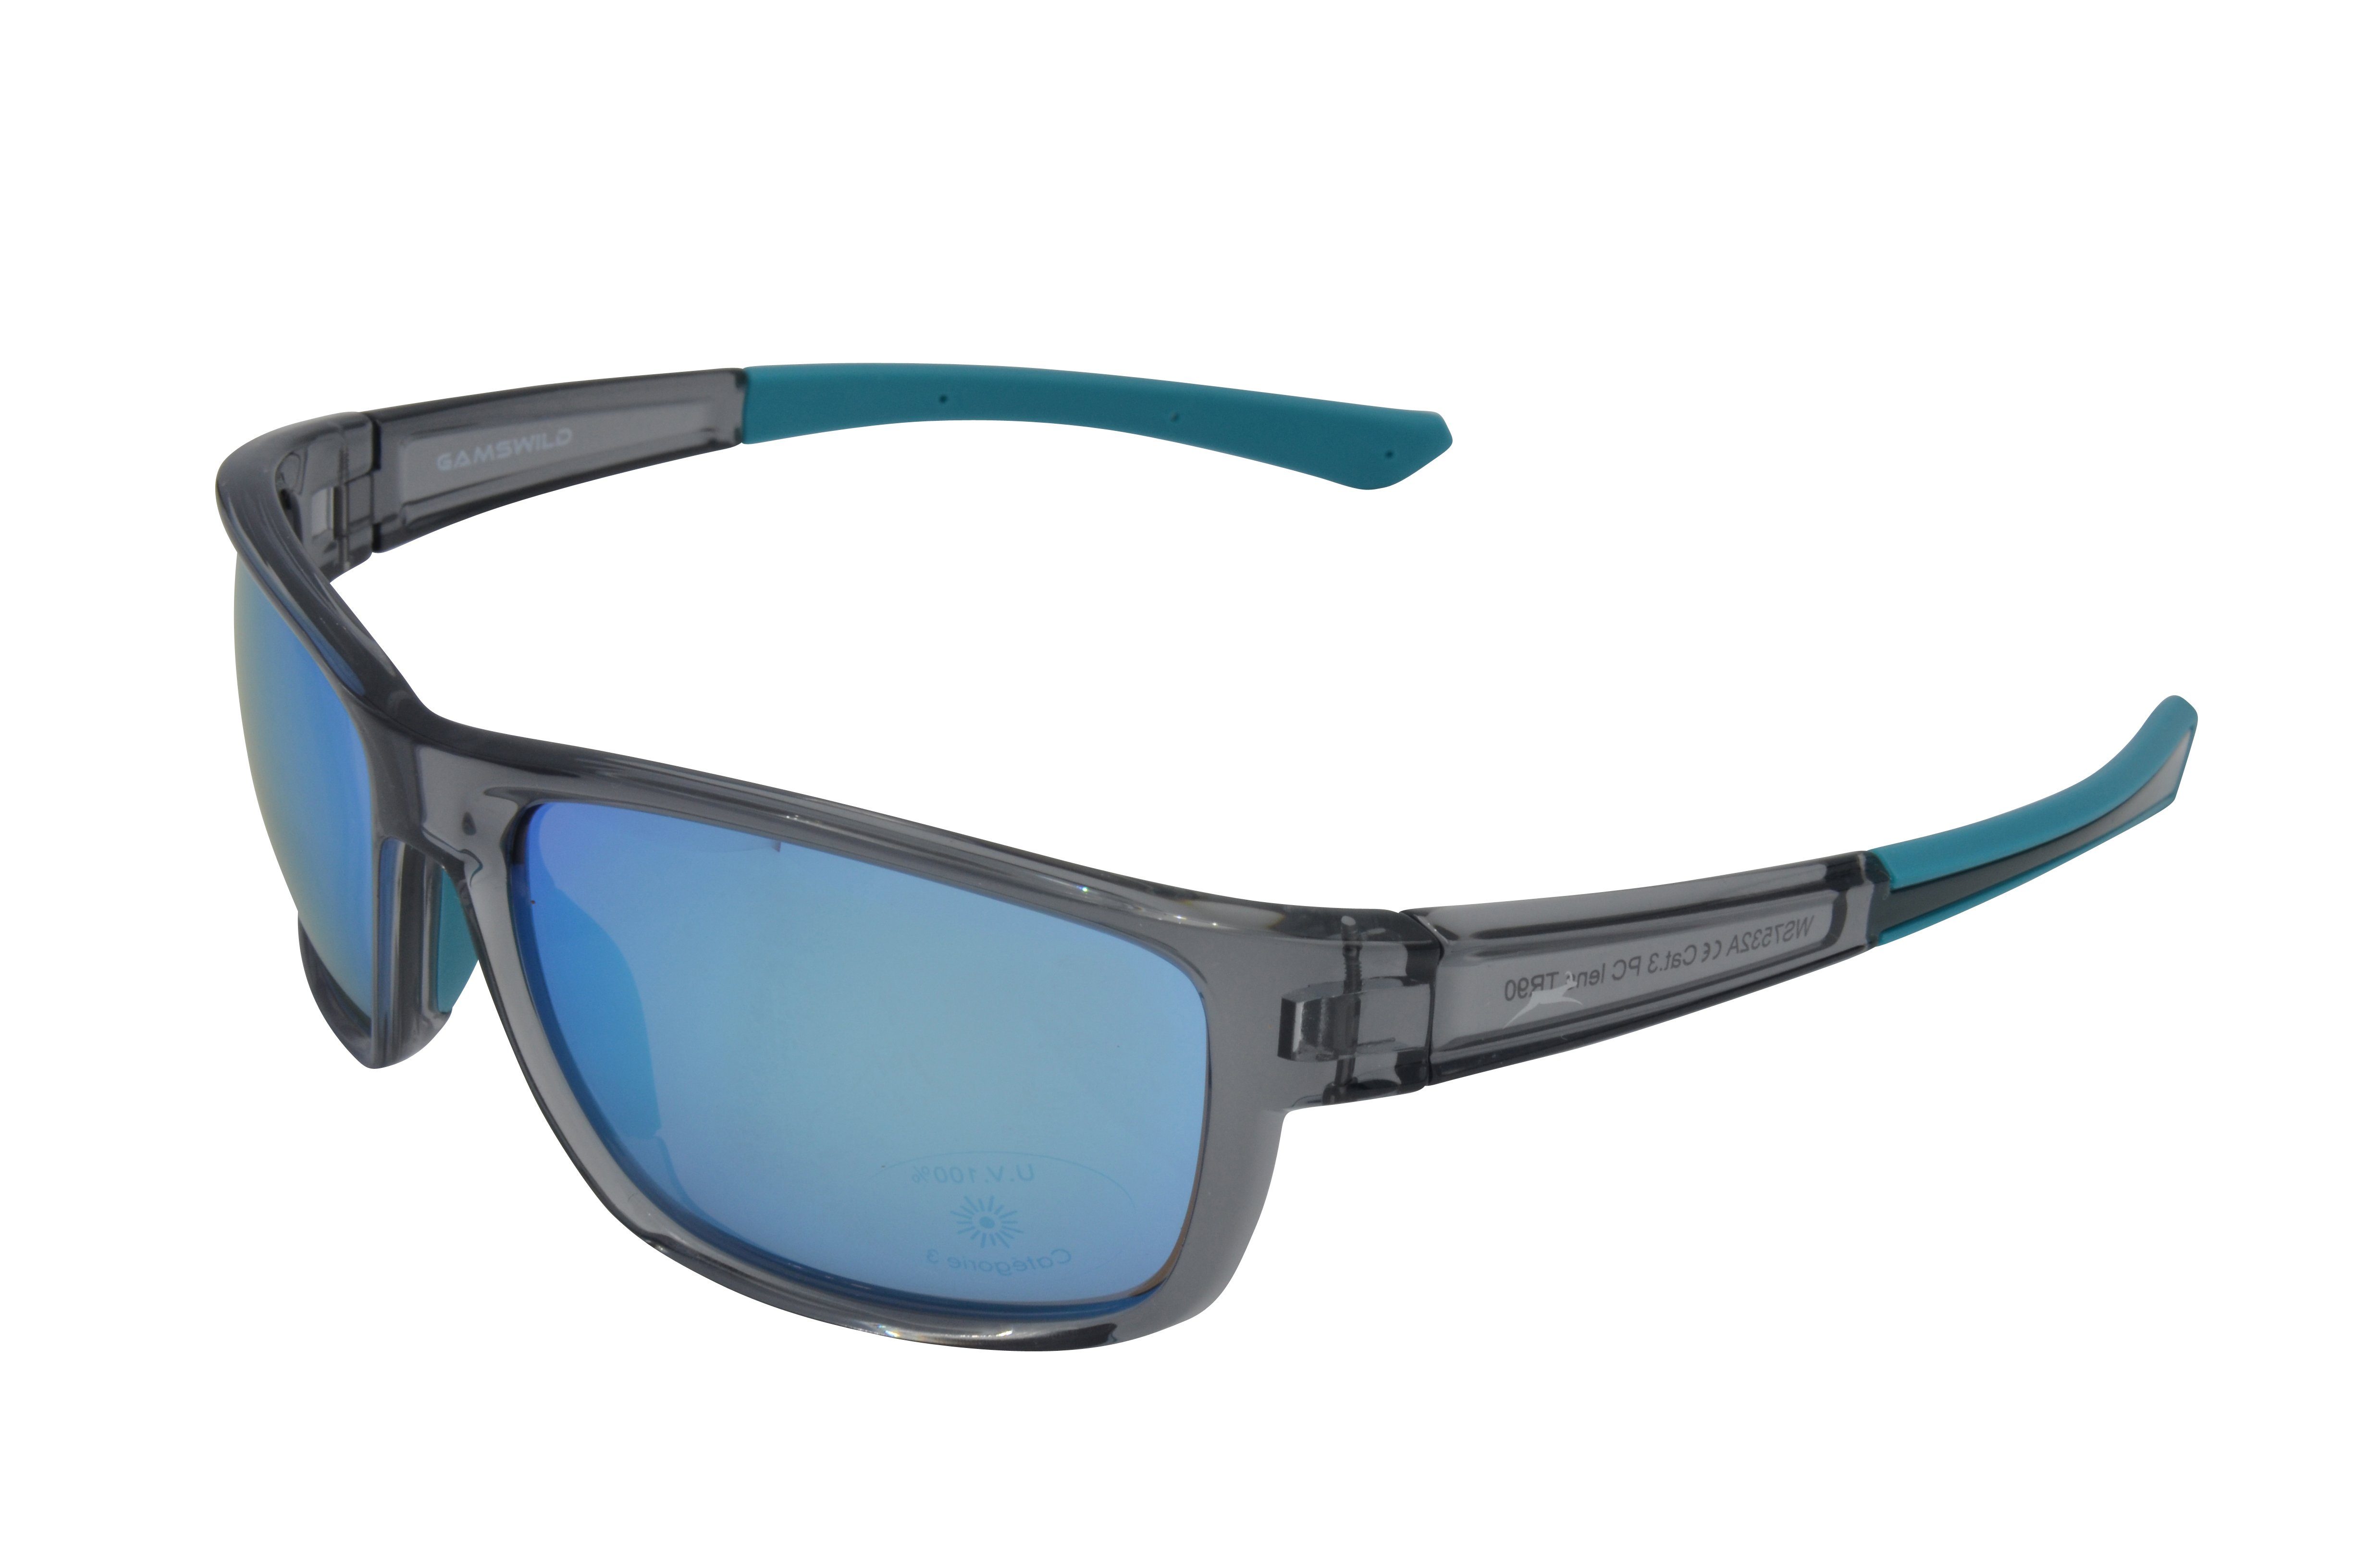 Gamswild Sportbrille WS7532 Sonnenbrille Skibrille Fahrradbrille Damen Herren Unisex TR90, grau-blau, schwarz-violett, schwarz-gold, schmal geschnittene Passform grau_blau | Fahrradbrillen